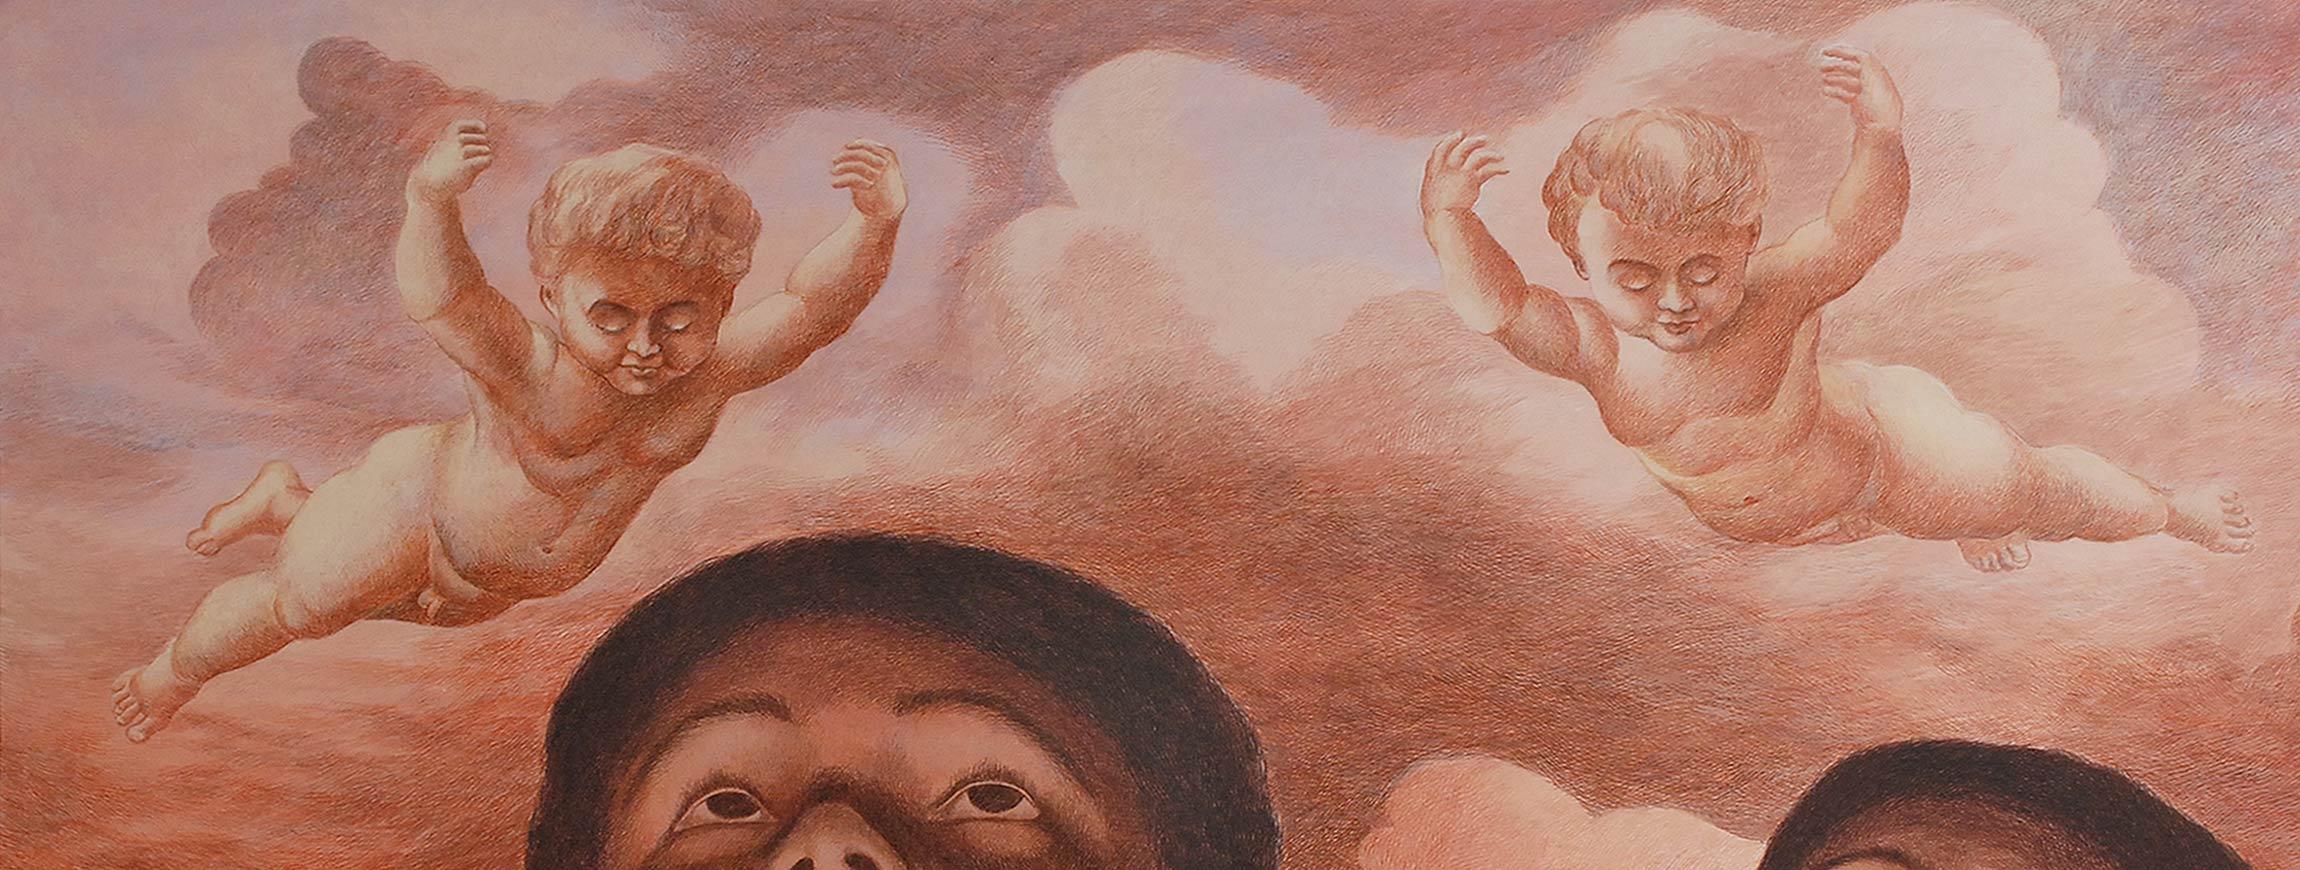 L'enfance perdue, acrylique sur toile, marron par l'artiste contemporain indien